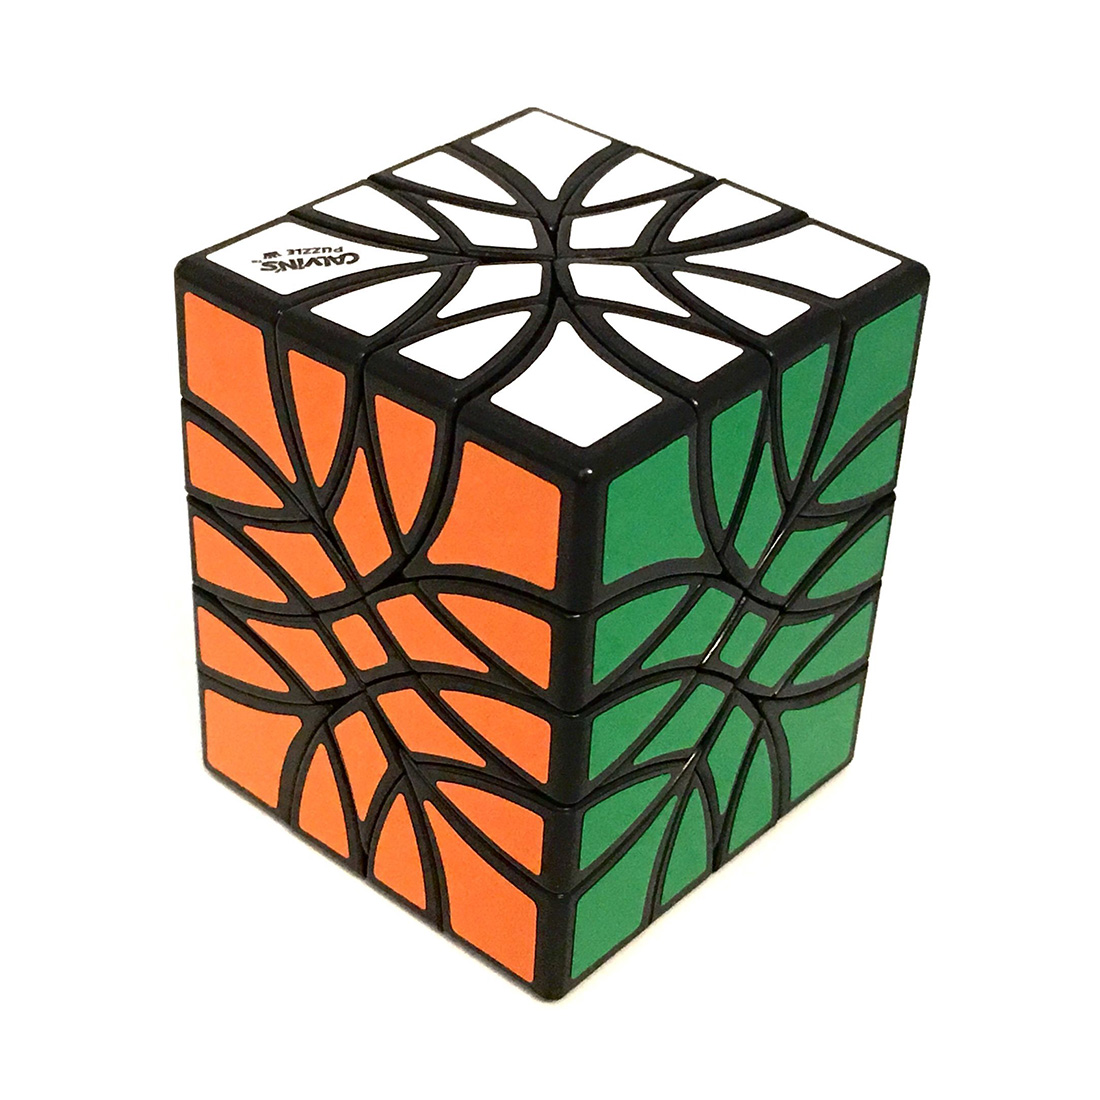 Carl's Bubbloid 4x4x5 Cube